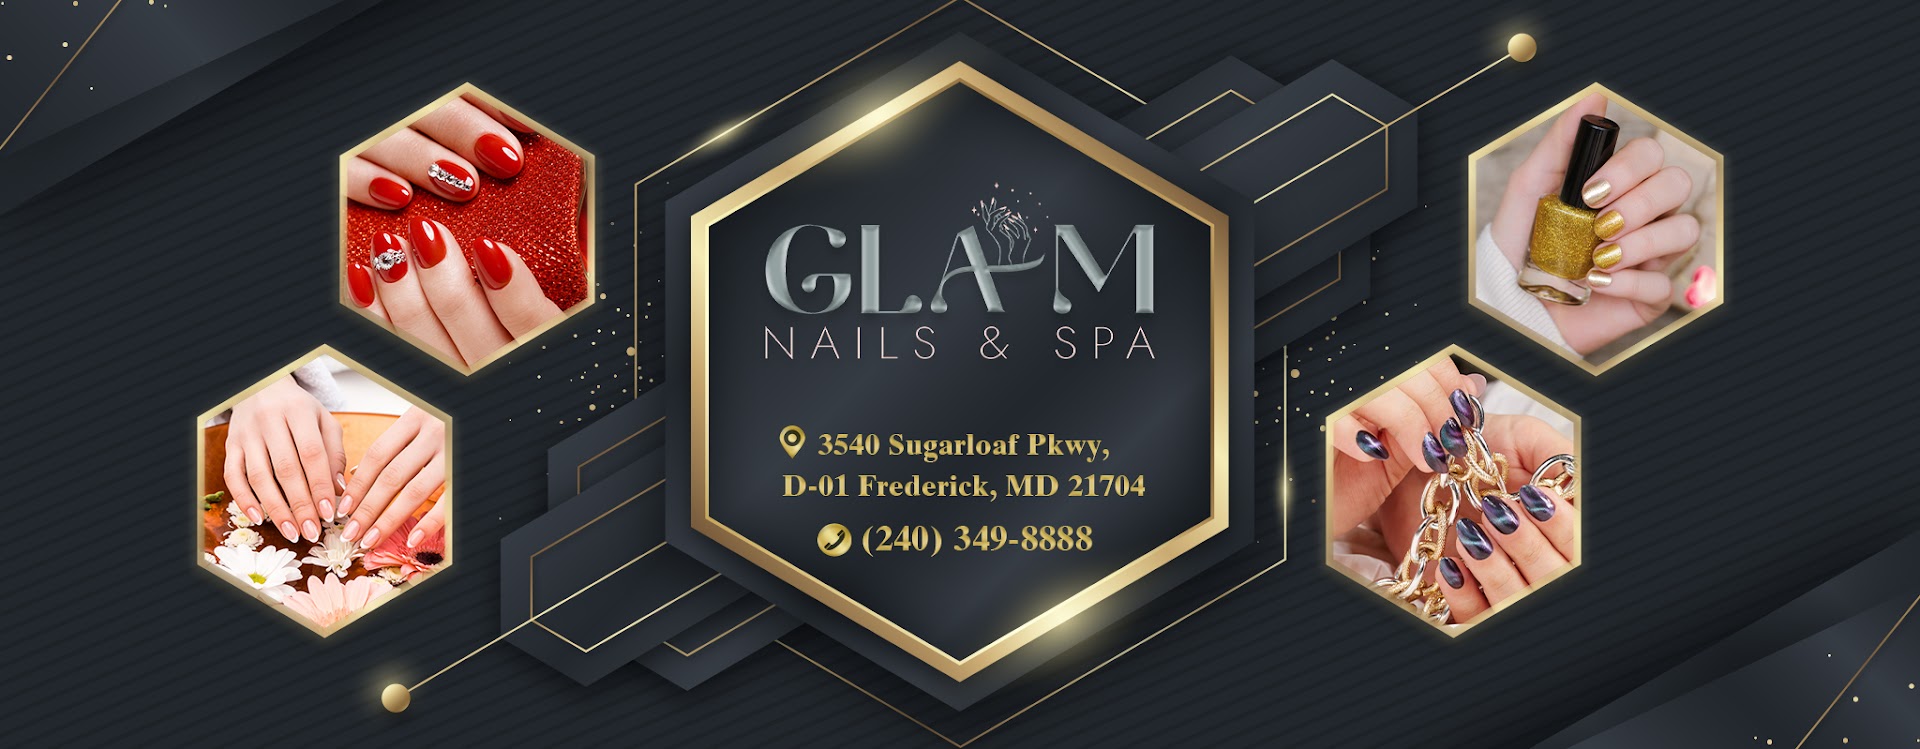 Glam Nails & Spa